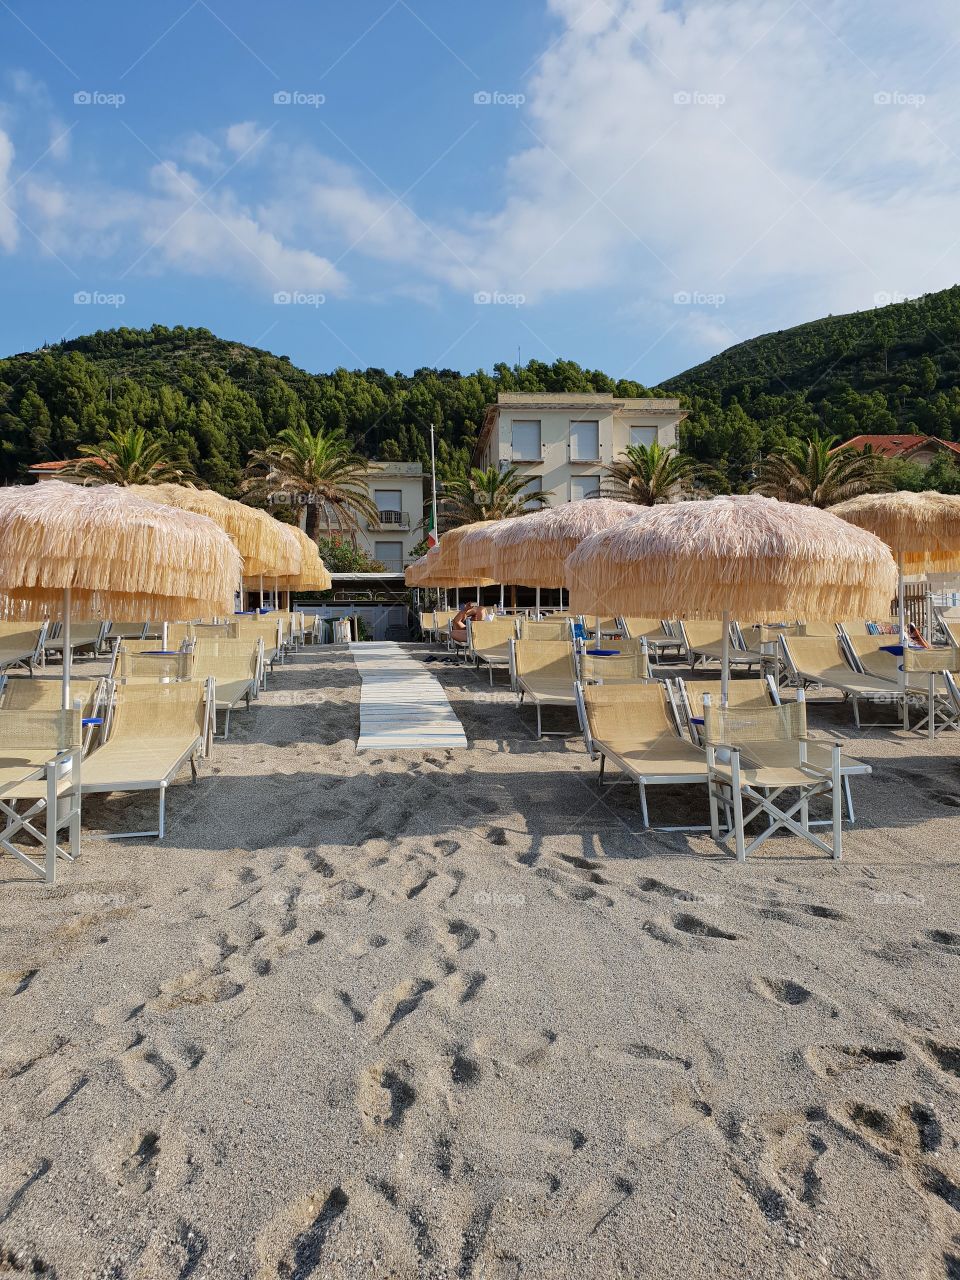 Beach on the Ligurian coast, Italy